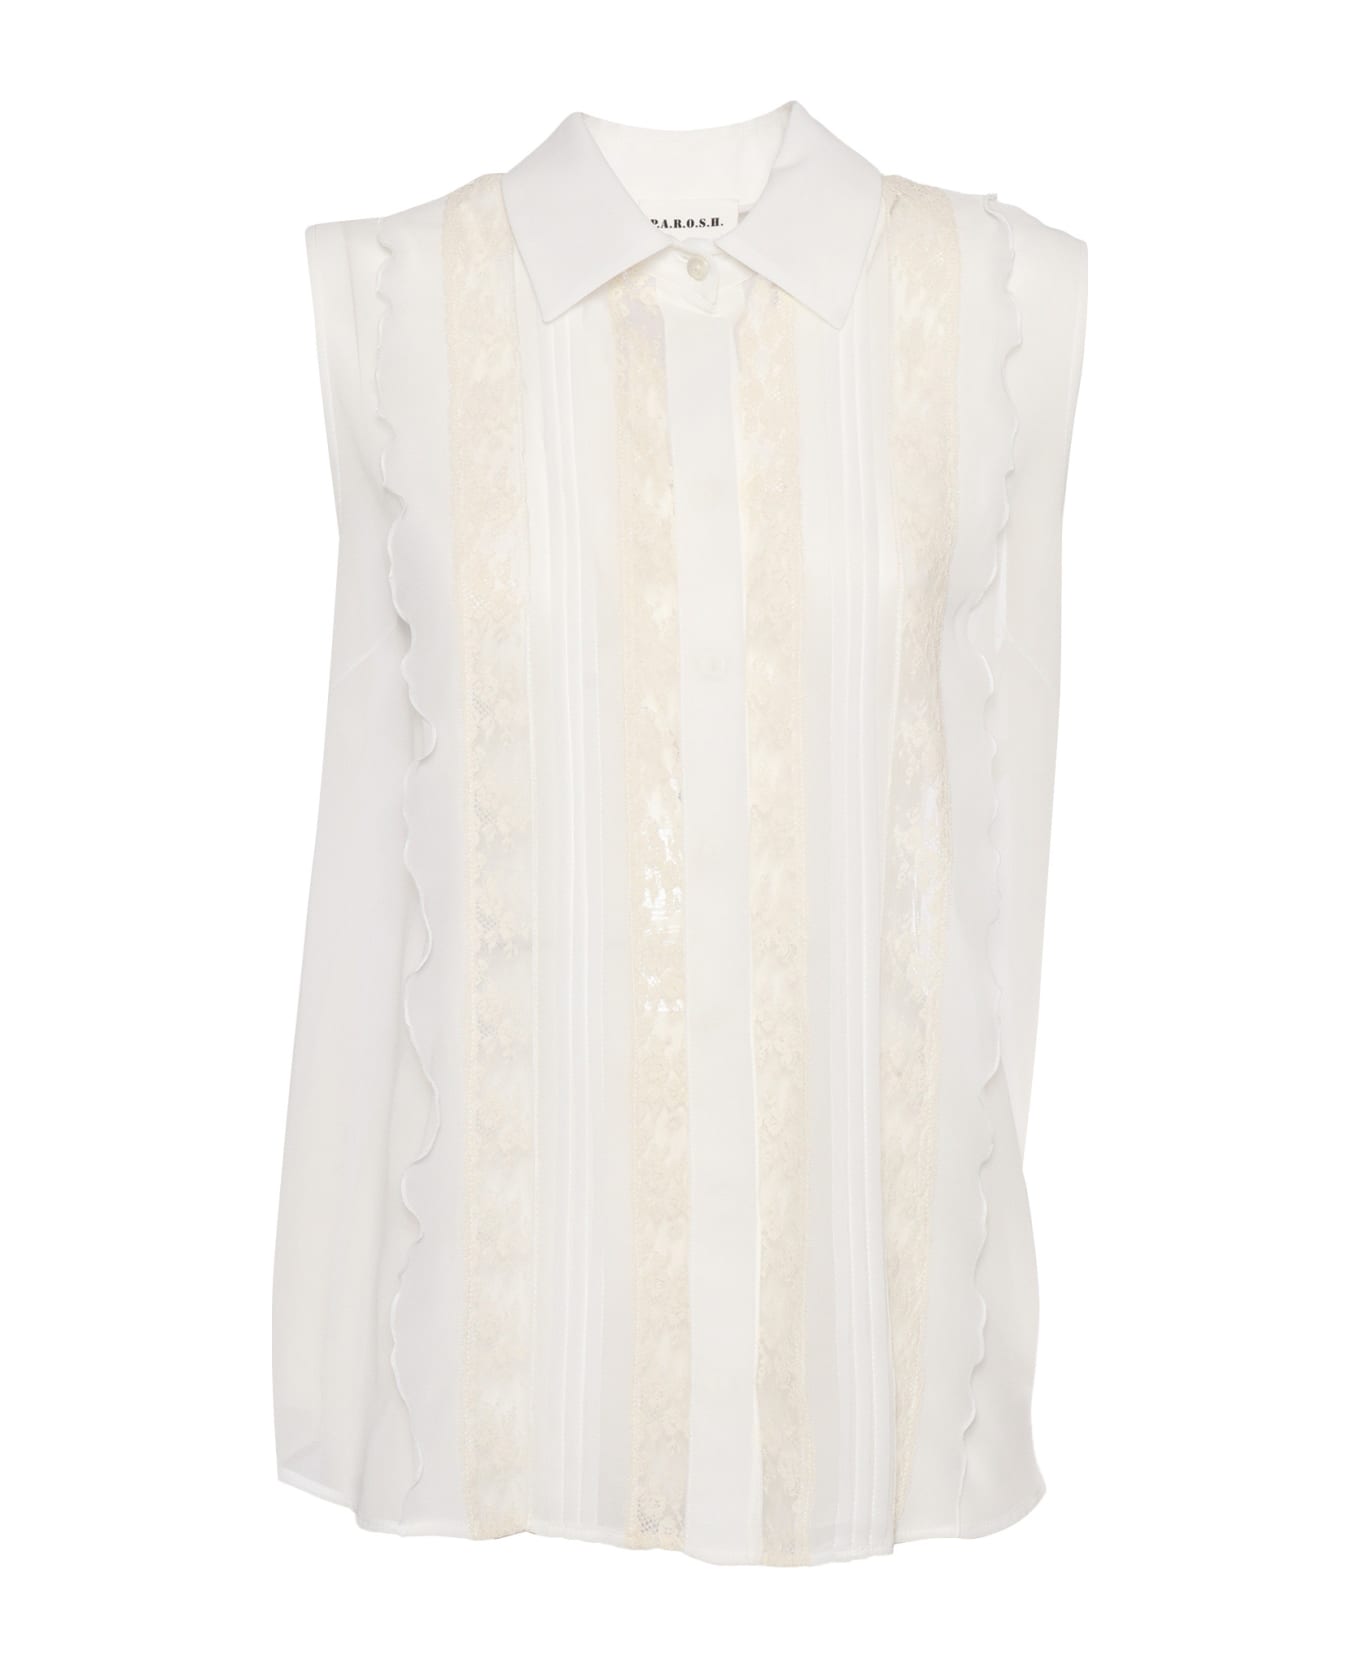 Parosh Sleeveless Shirt With Lace - WHITE